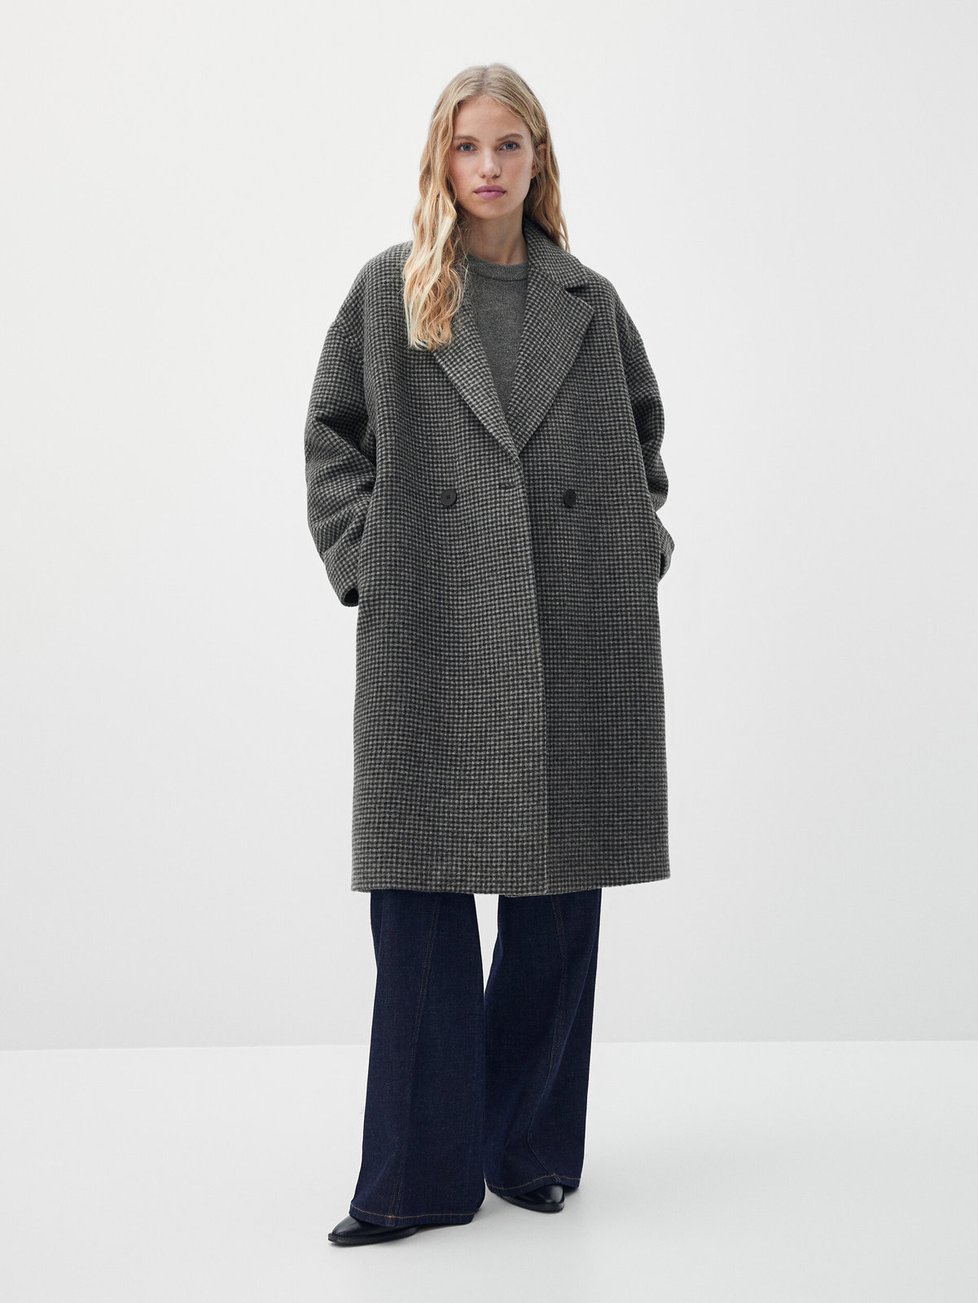 Kabát Massimo Dutti, původní cena 5595 Kč, po slevě 3999 Kč